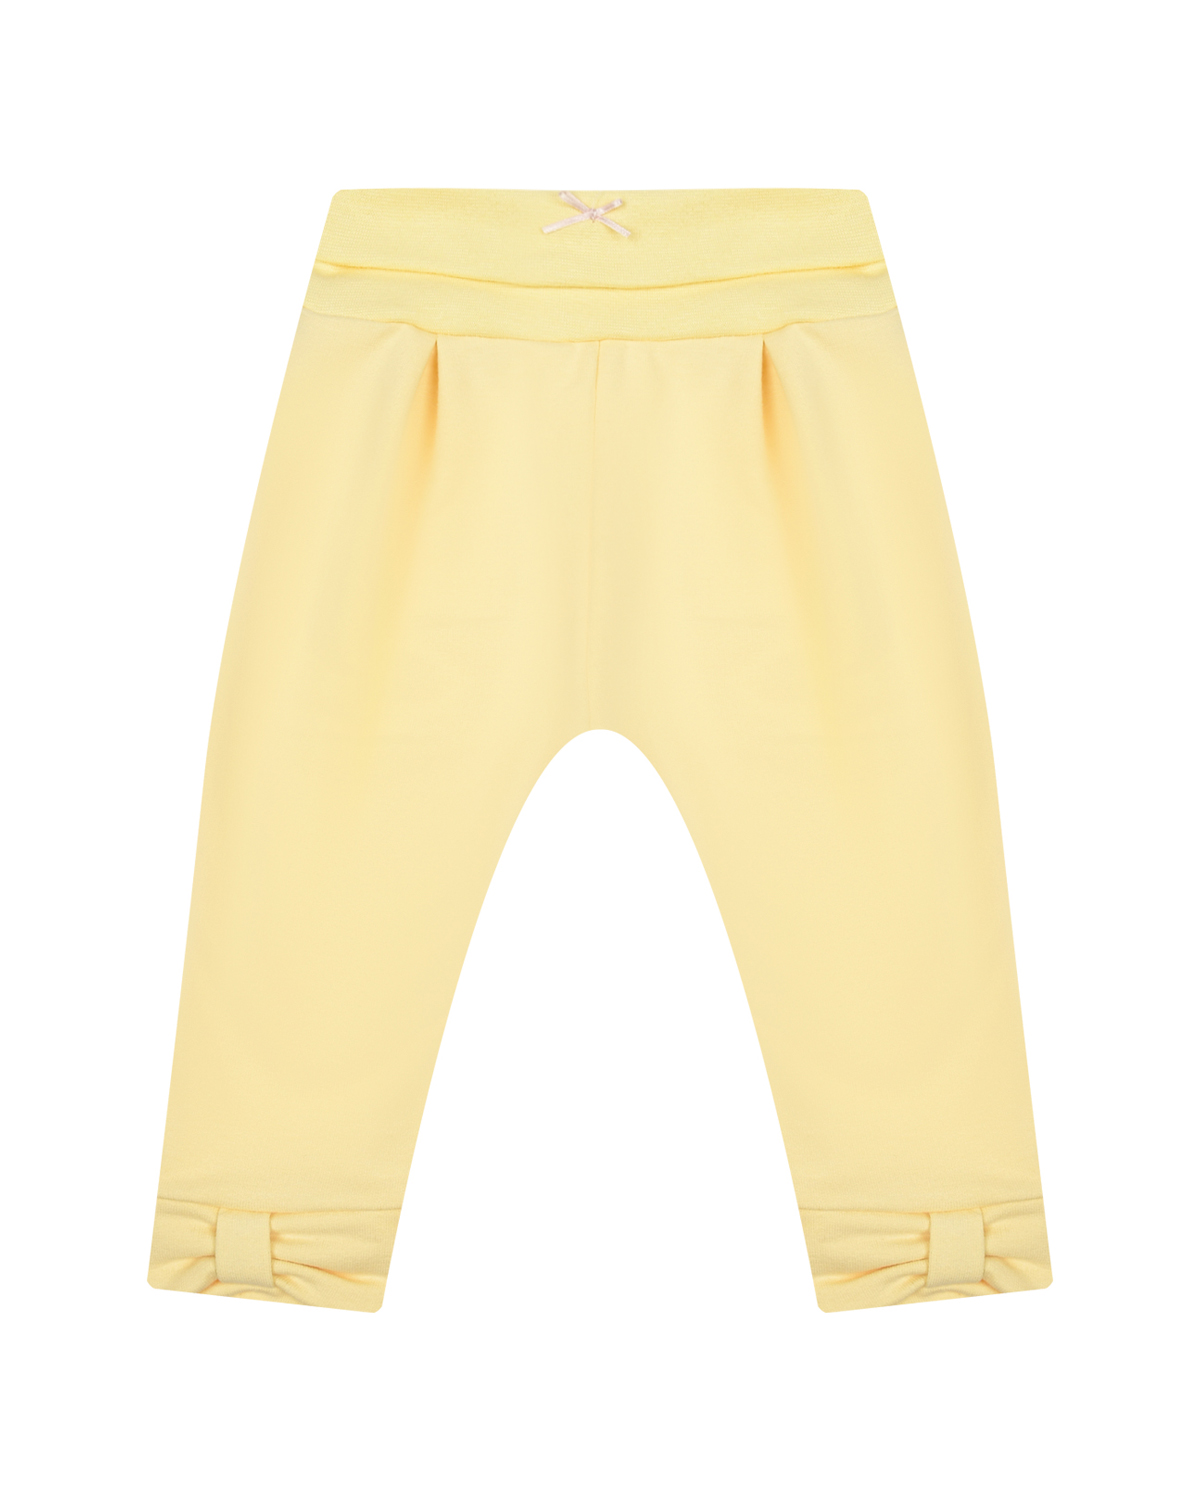 Желтые спортивные брюки с бантами Sanetta fiftyseven персиковые спортивные брюки с принтом в полоску sanetta fiftyseven детские